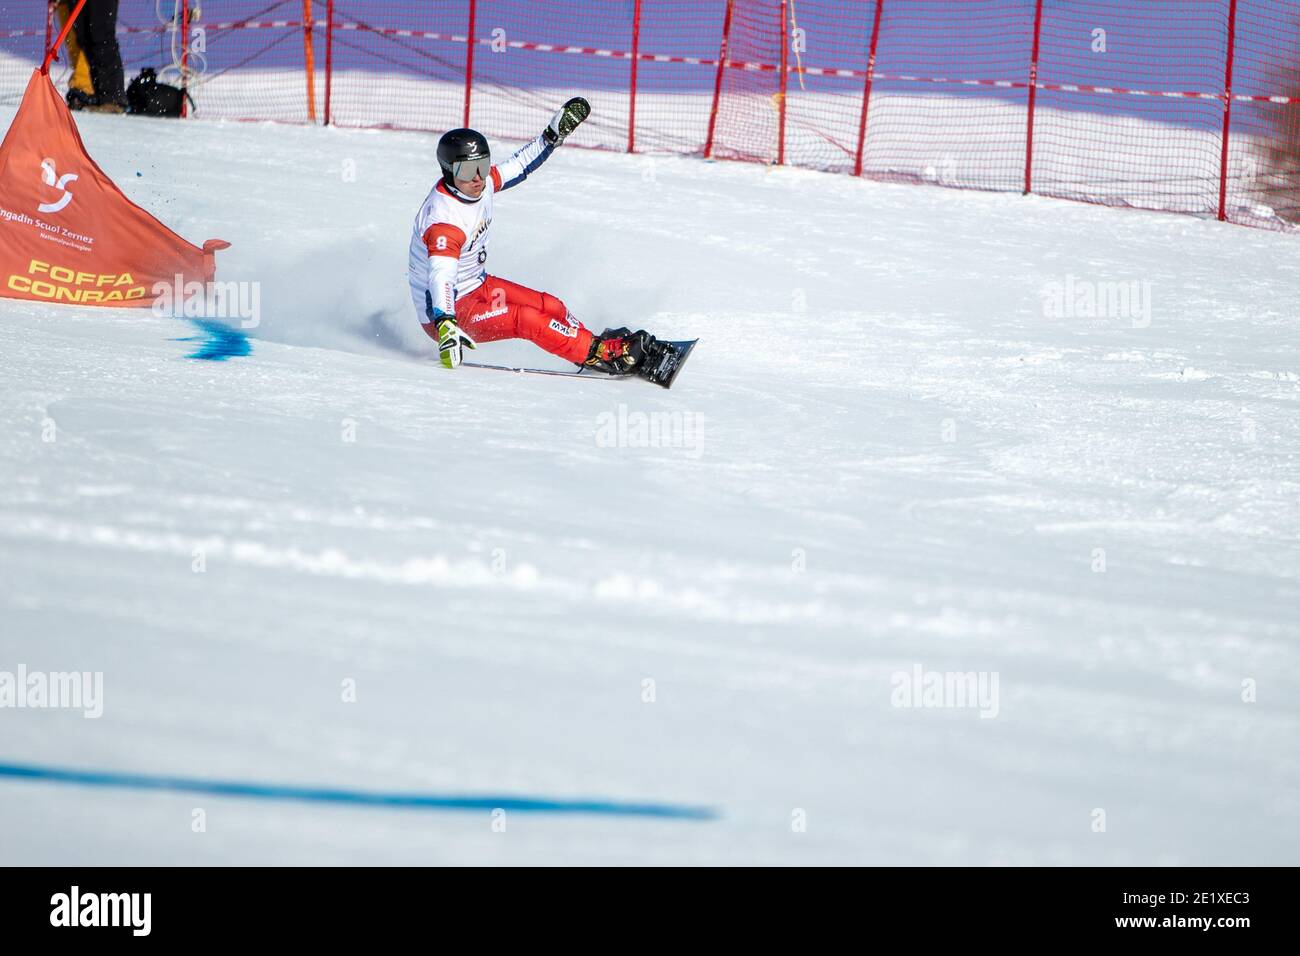 09.01.2021, Scuol, Alpin Worldcup, FIS Snowboard Alpin Worldcup Scuol, GALMARINI Nevin (SUI) Stock Photo